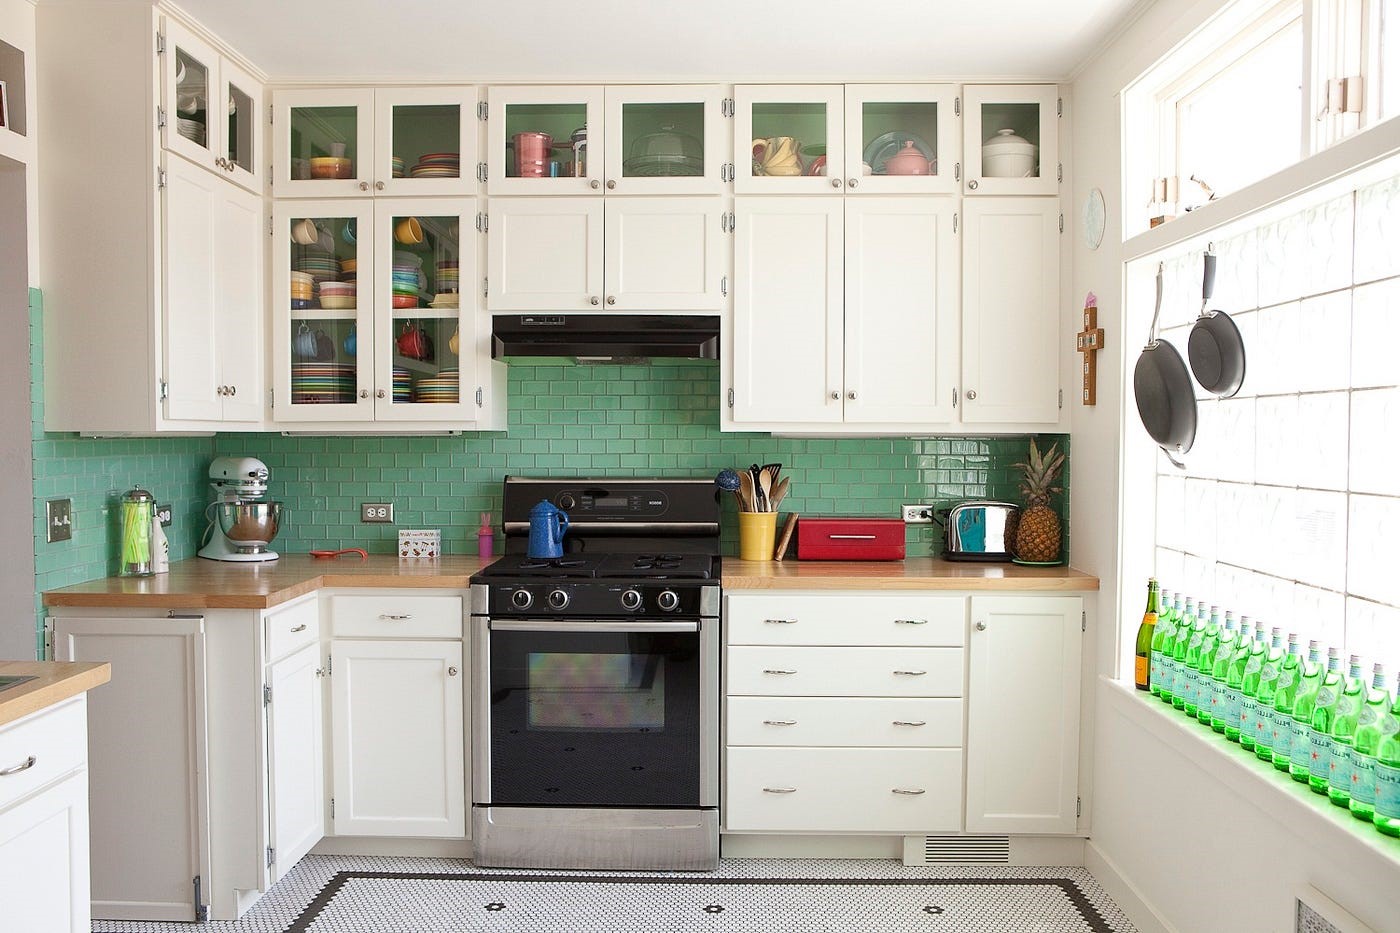 دکوراسیون آشپزخانه کوچک - مجموعه مهندسی آرشید